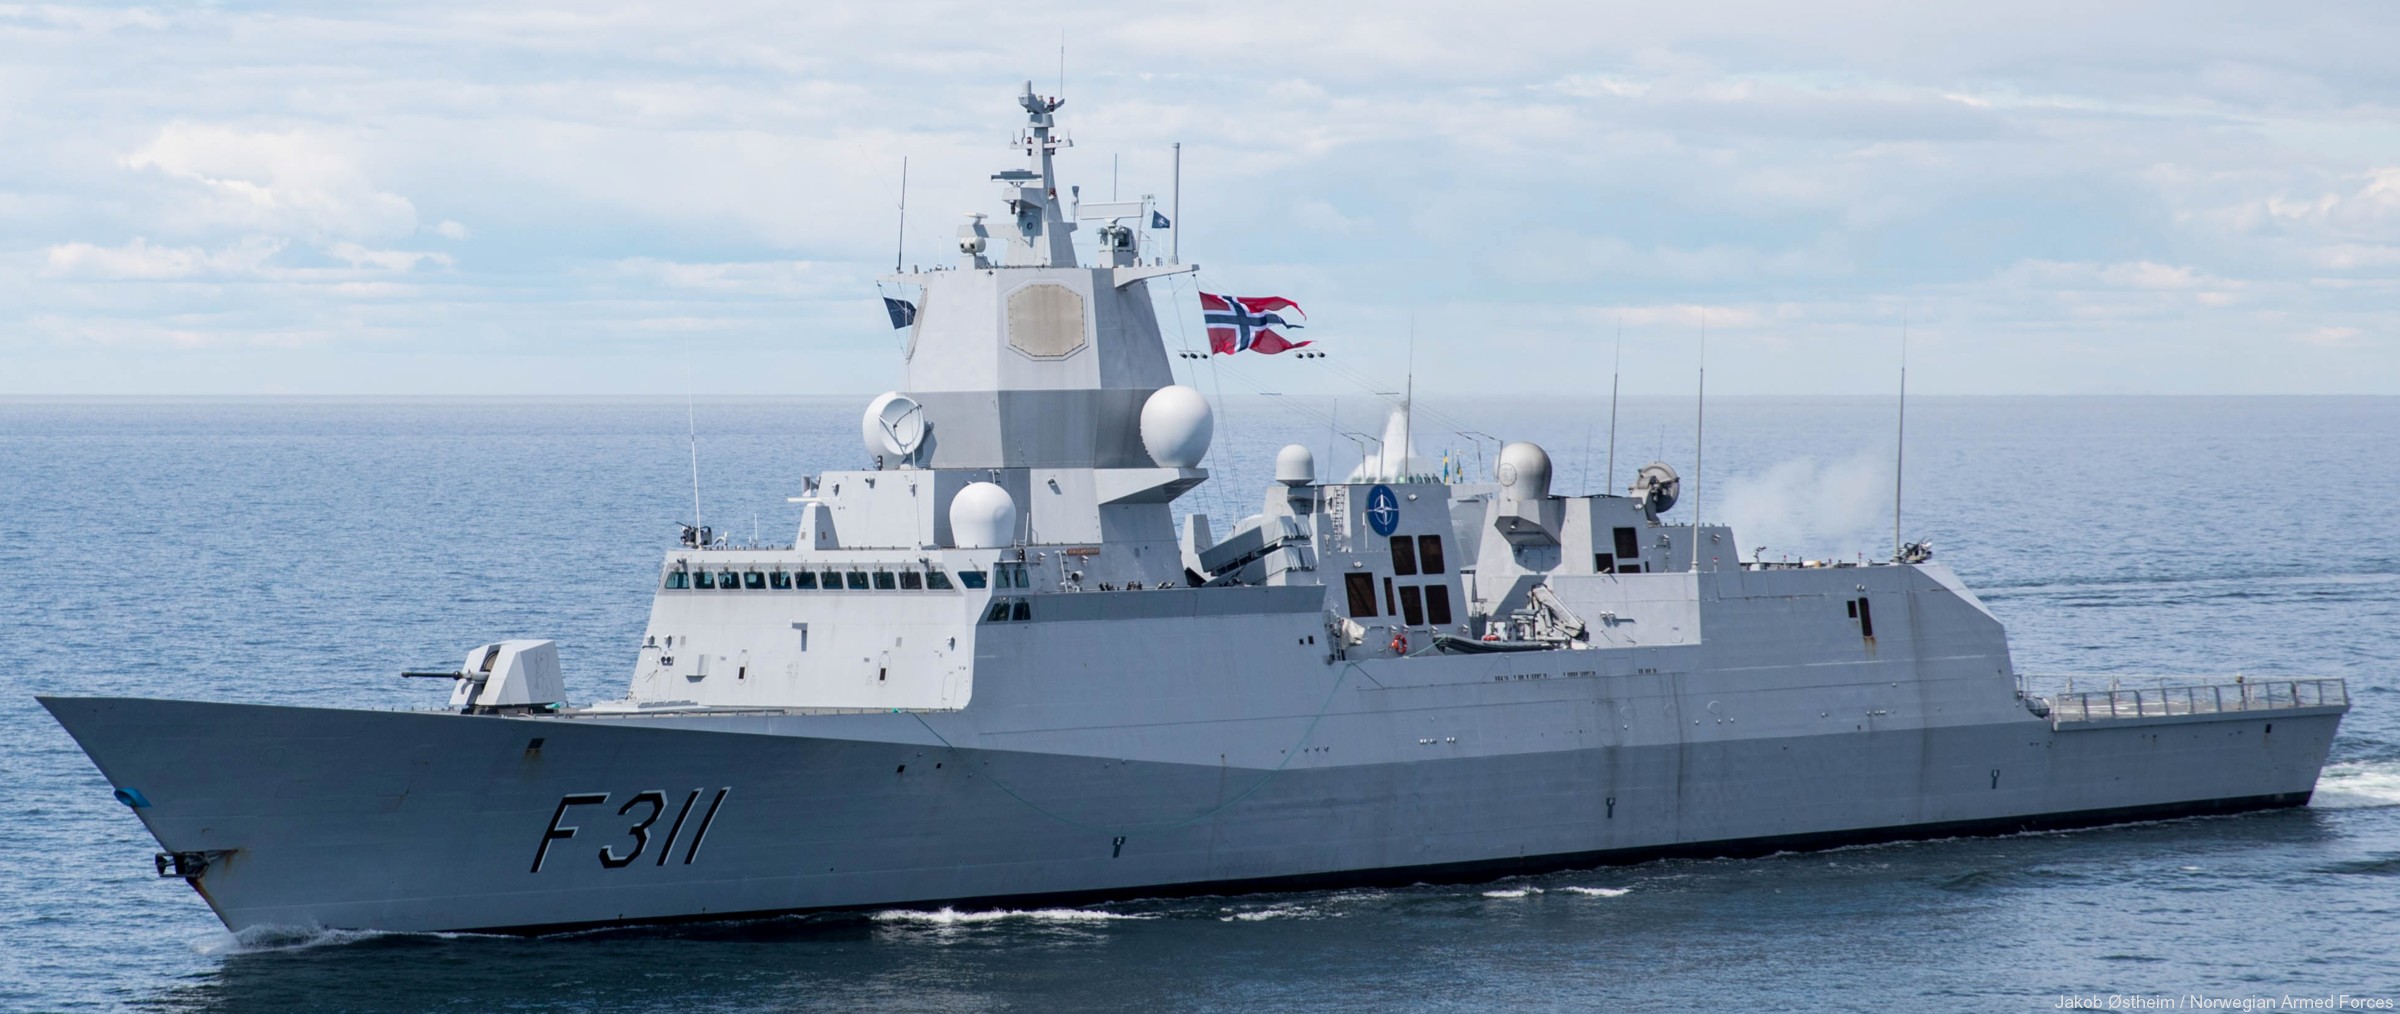 f-311 hnoms roald amundsen knm nansen class frigate royal norwegian navy sjoforsvaret 34